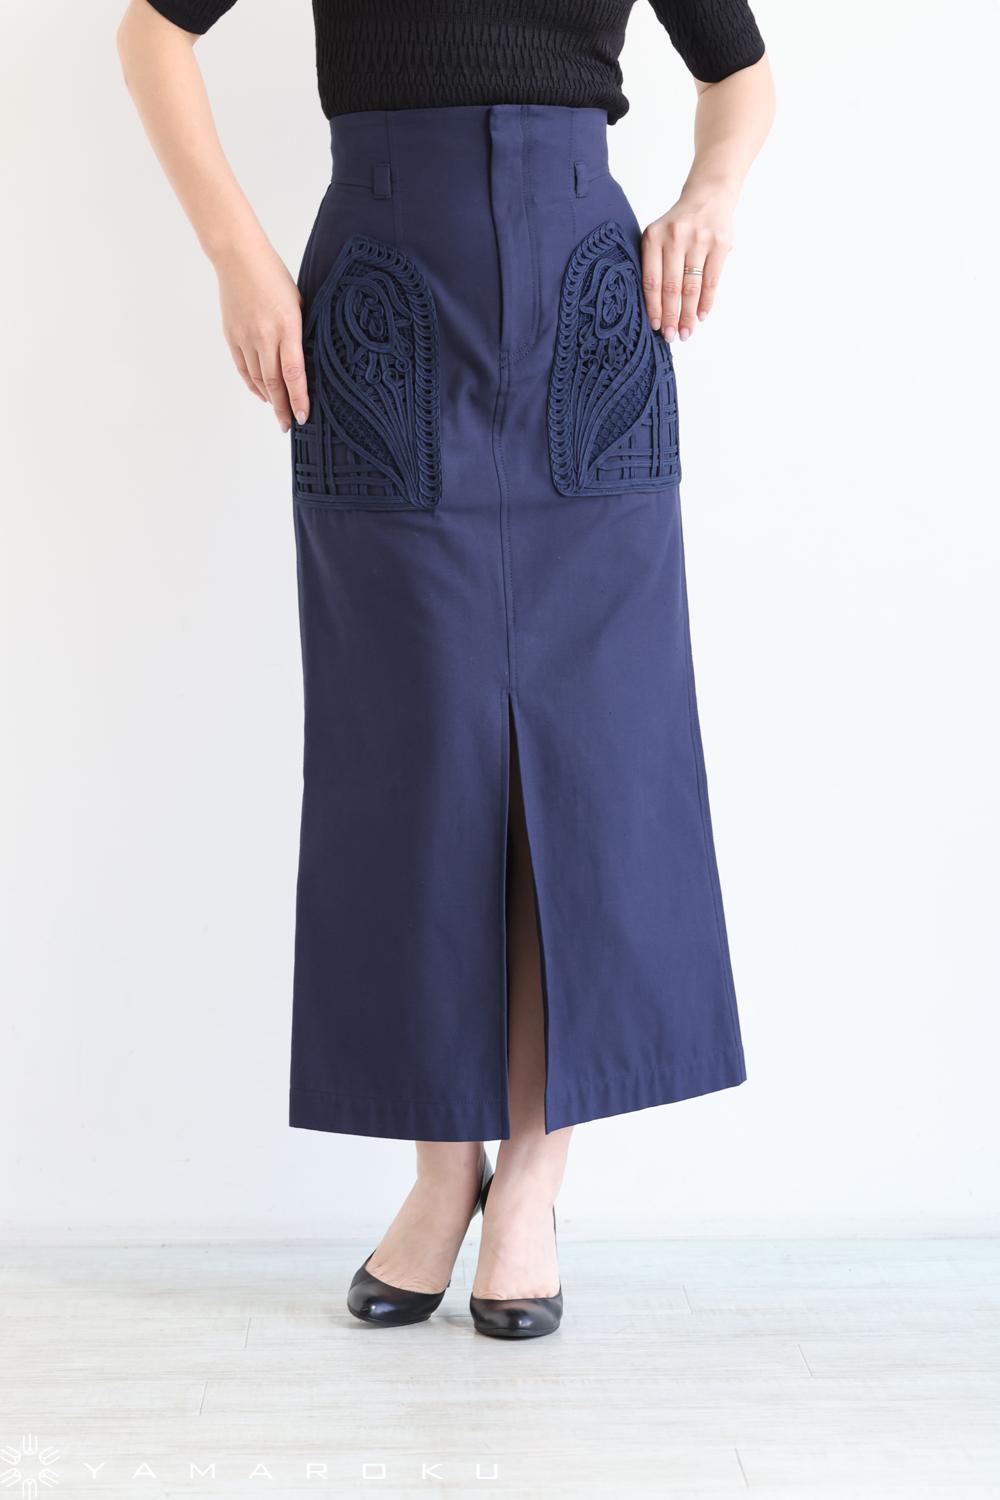 Mame Kurogouchi(マメ) Cording Embroidered Nep-Cotton Skirt 